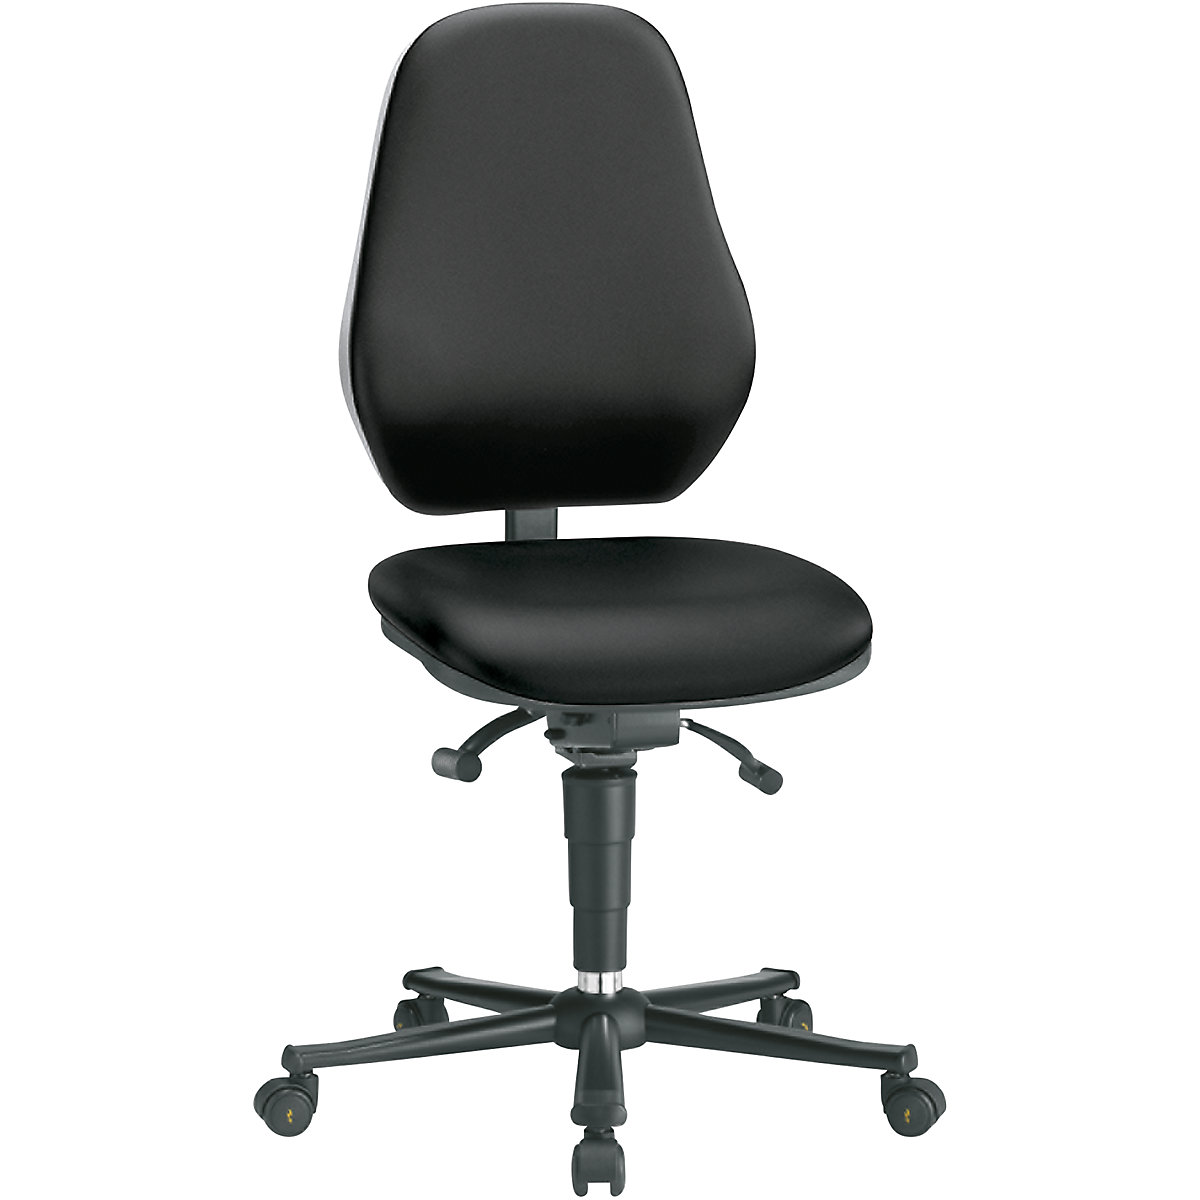 Pracovní otočná židle – bimos, s ochranou ESD, plynová pružina, s kolečky, černý koženkový potah-15